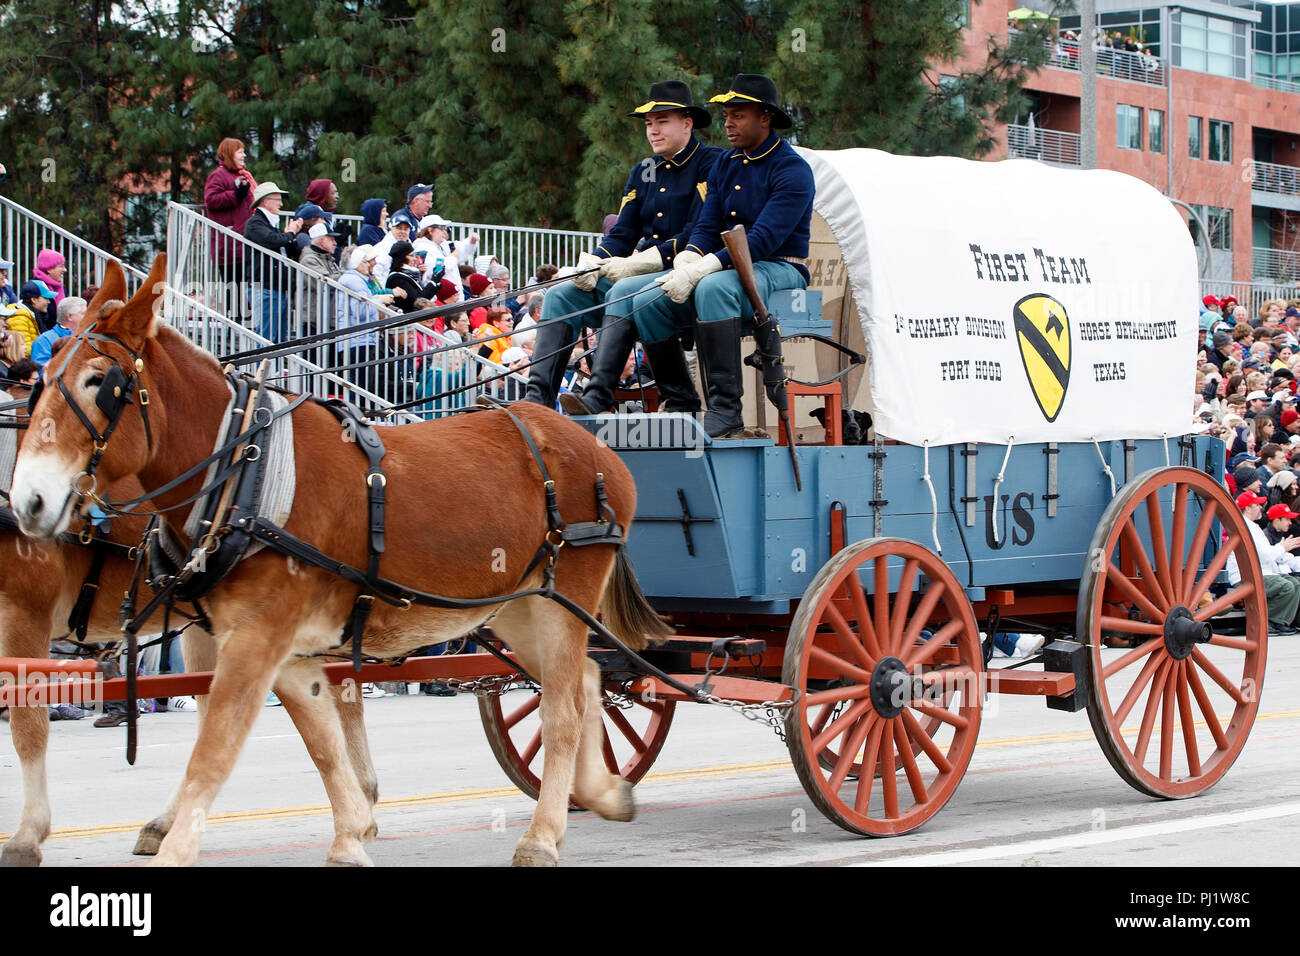 De chariot tiré par des chevaux de l'armée des Etats-Unis, 1e de cavalerie, de Fort Hood, au Texas, 2017 Tournoi de Roses, Rose Parade Parade, Pasadena, Californie, États-Unis d'Amérique Banque D'Images